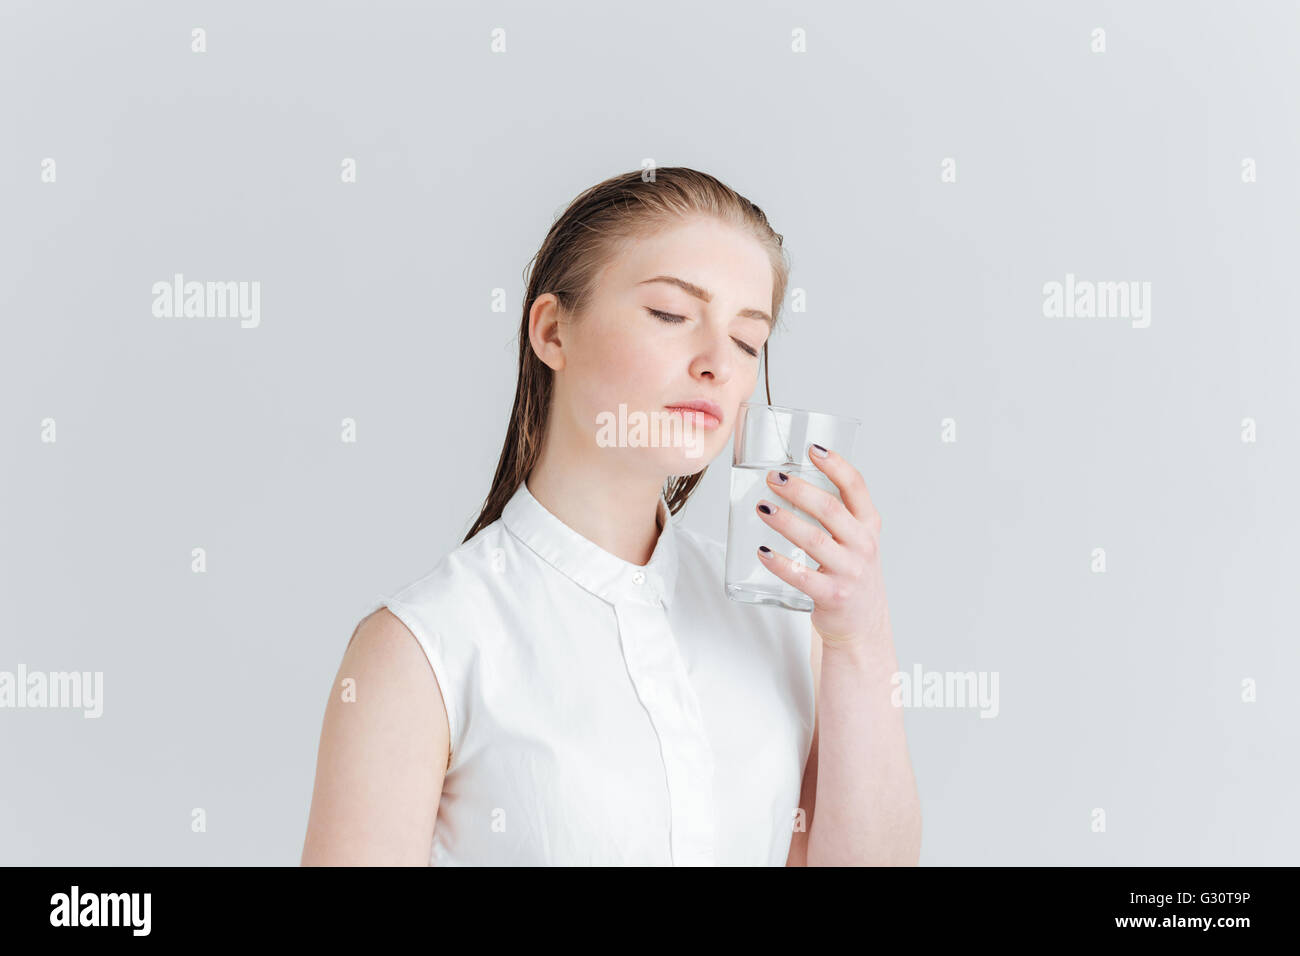 Portrait de femme beauté détendue avec la peau douce holding glass of water isolé sur fond blanc Banque D'Images